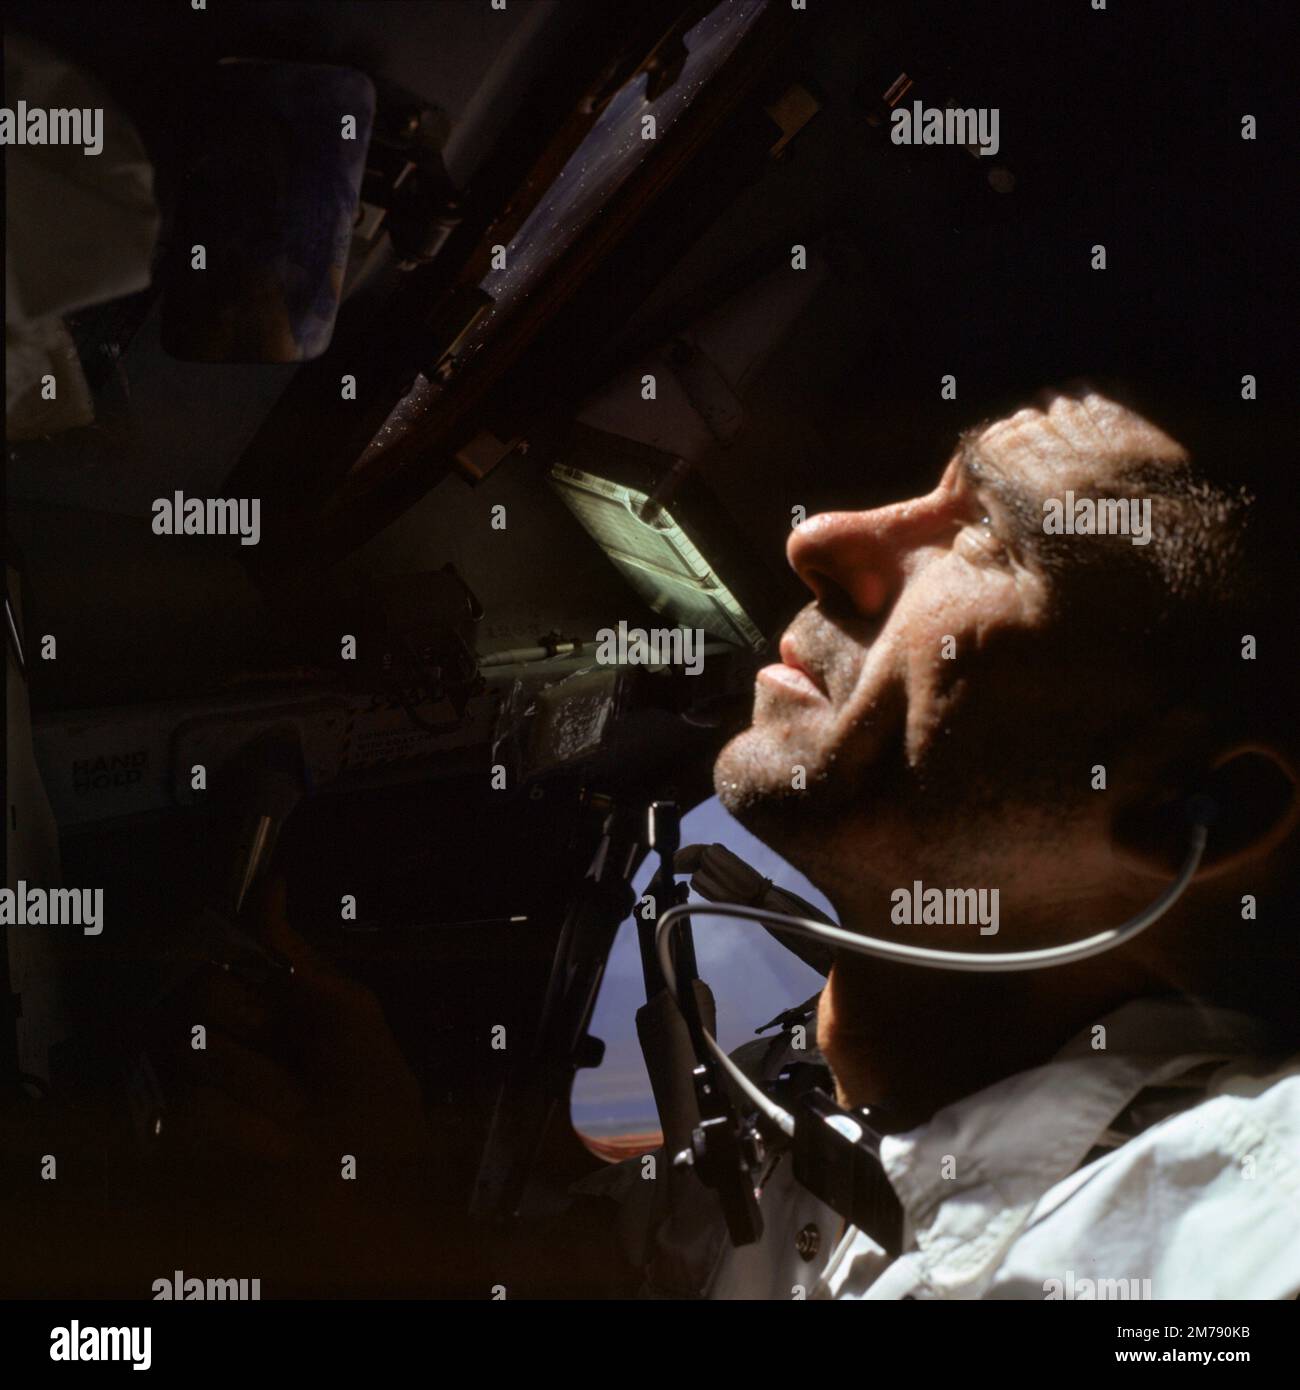 Erdumlaufbahn, Erdumlaufbahn. 11. Oktober 1968. Der NASA Apollo VII-Premier-Crew-Astronaut Walter Cunningham blickt während des ersten Fluges in der Apollo-Kapsel am 11. Oktober 1968 in der Erdumlaufbahn aus dem Fenster. Cunningham starb am 4. Januar 2023 mit 90 Jahren, dem letzten überlebenden Mitglied der NASA Apollo 7 Mission. Stockfoto